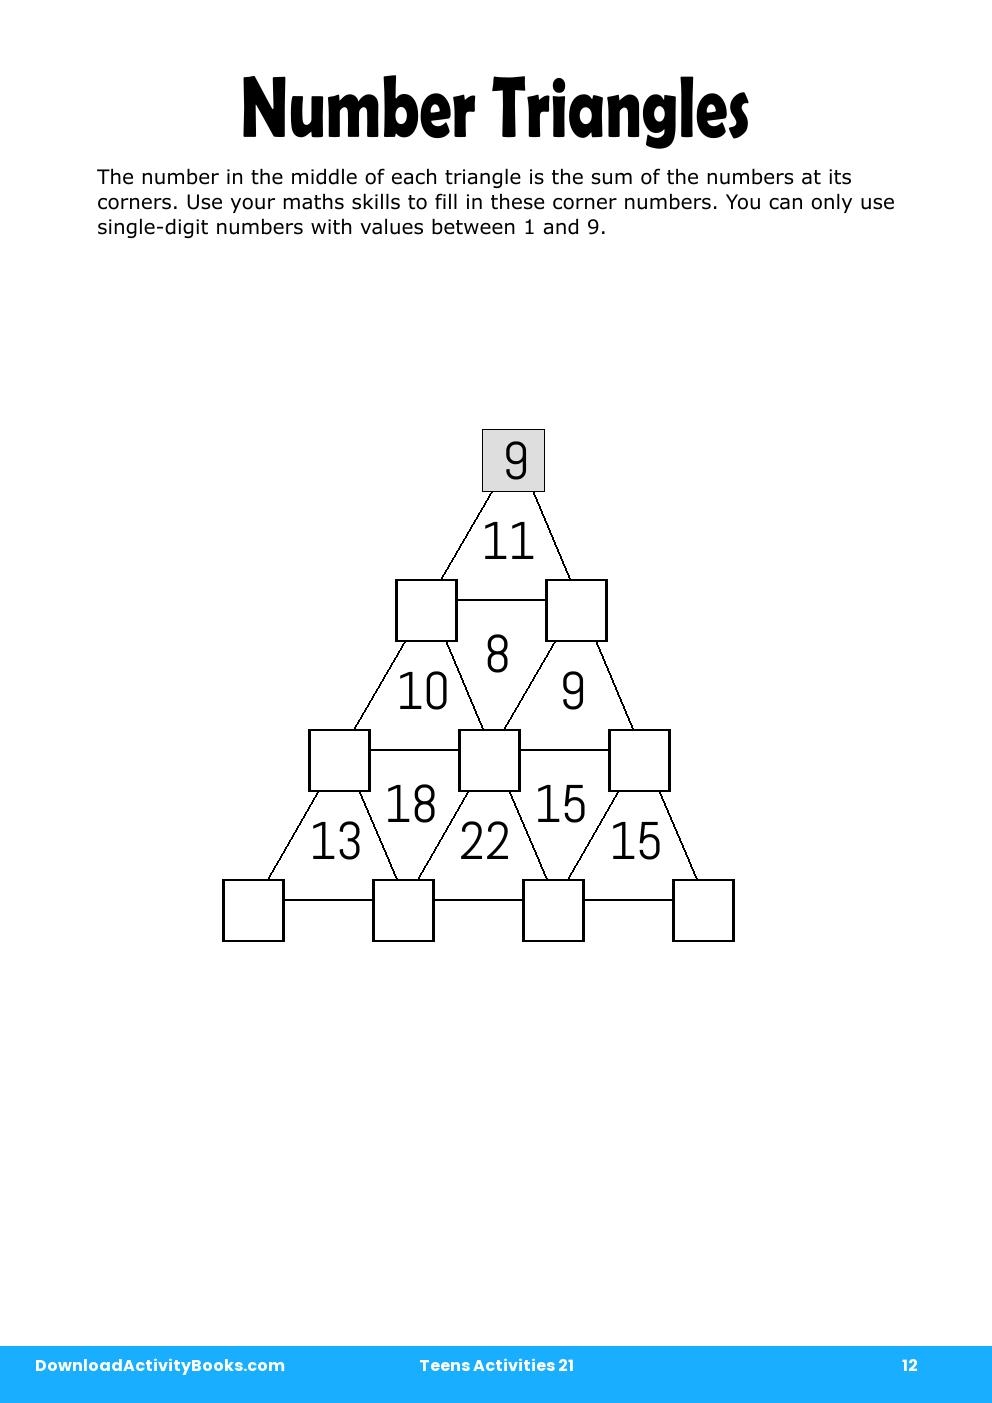 Number Triangles in Teens Activities 21